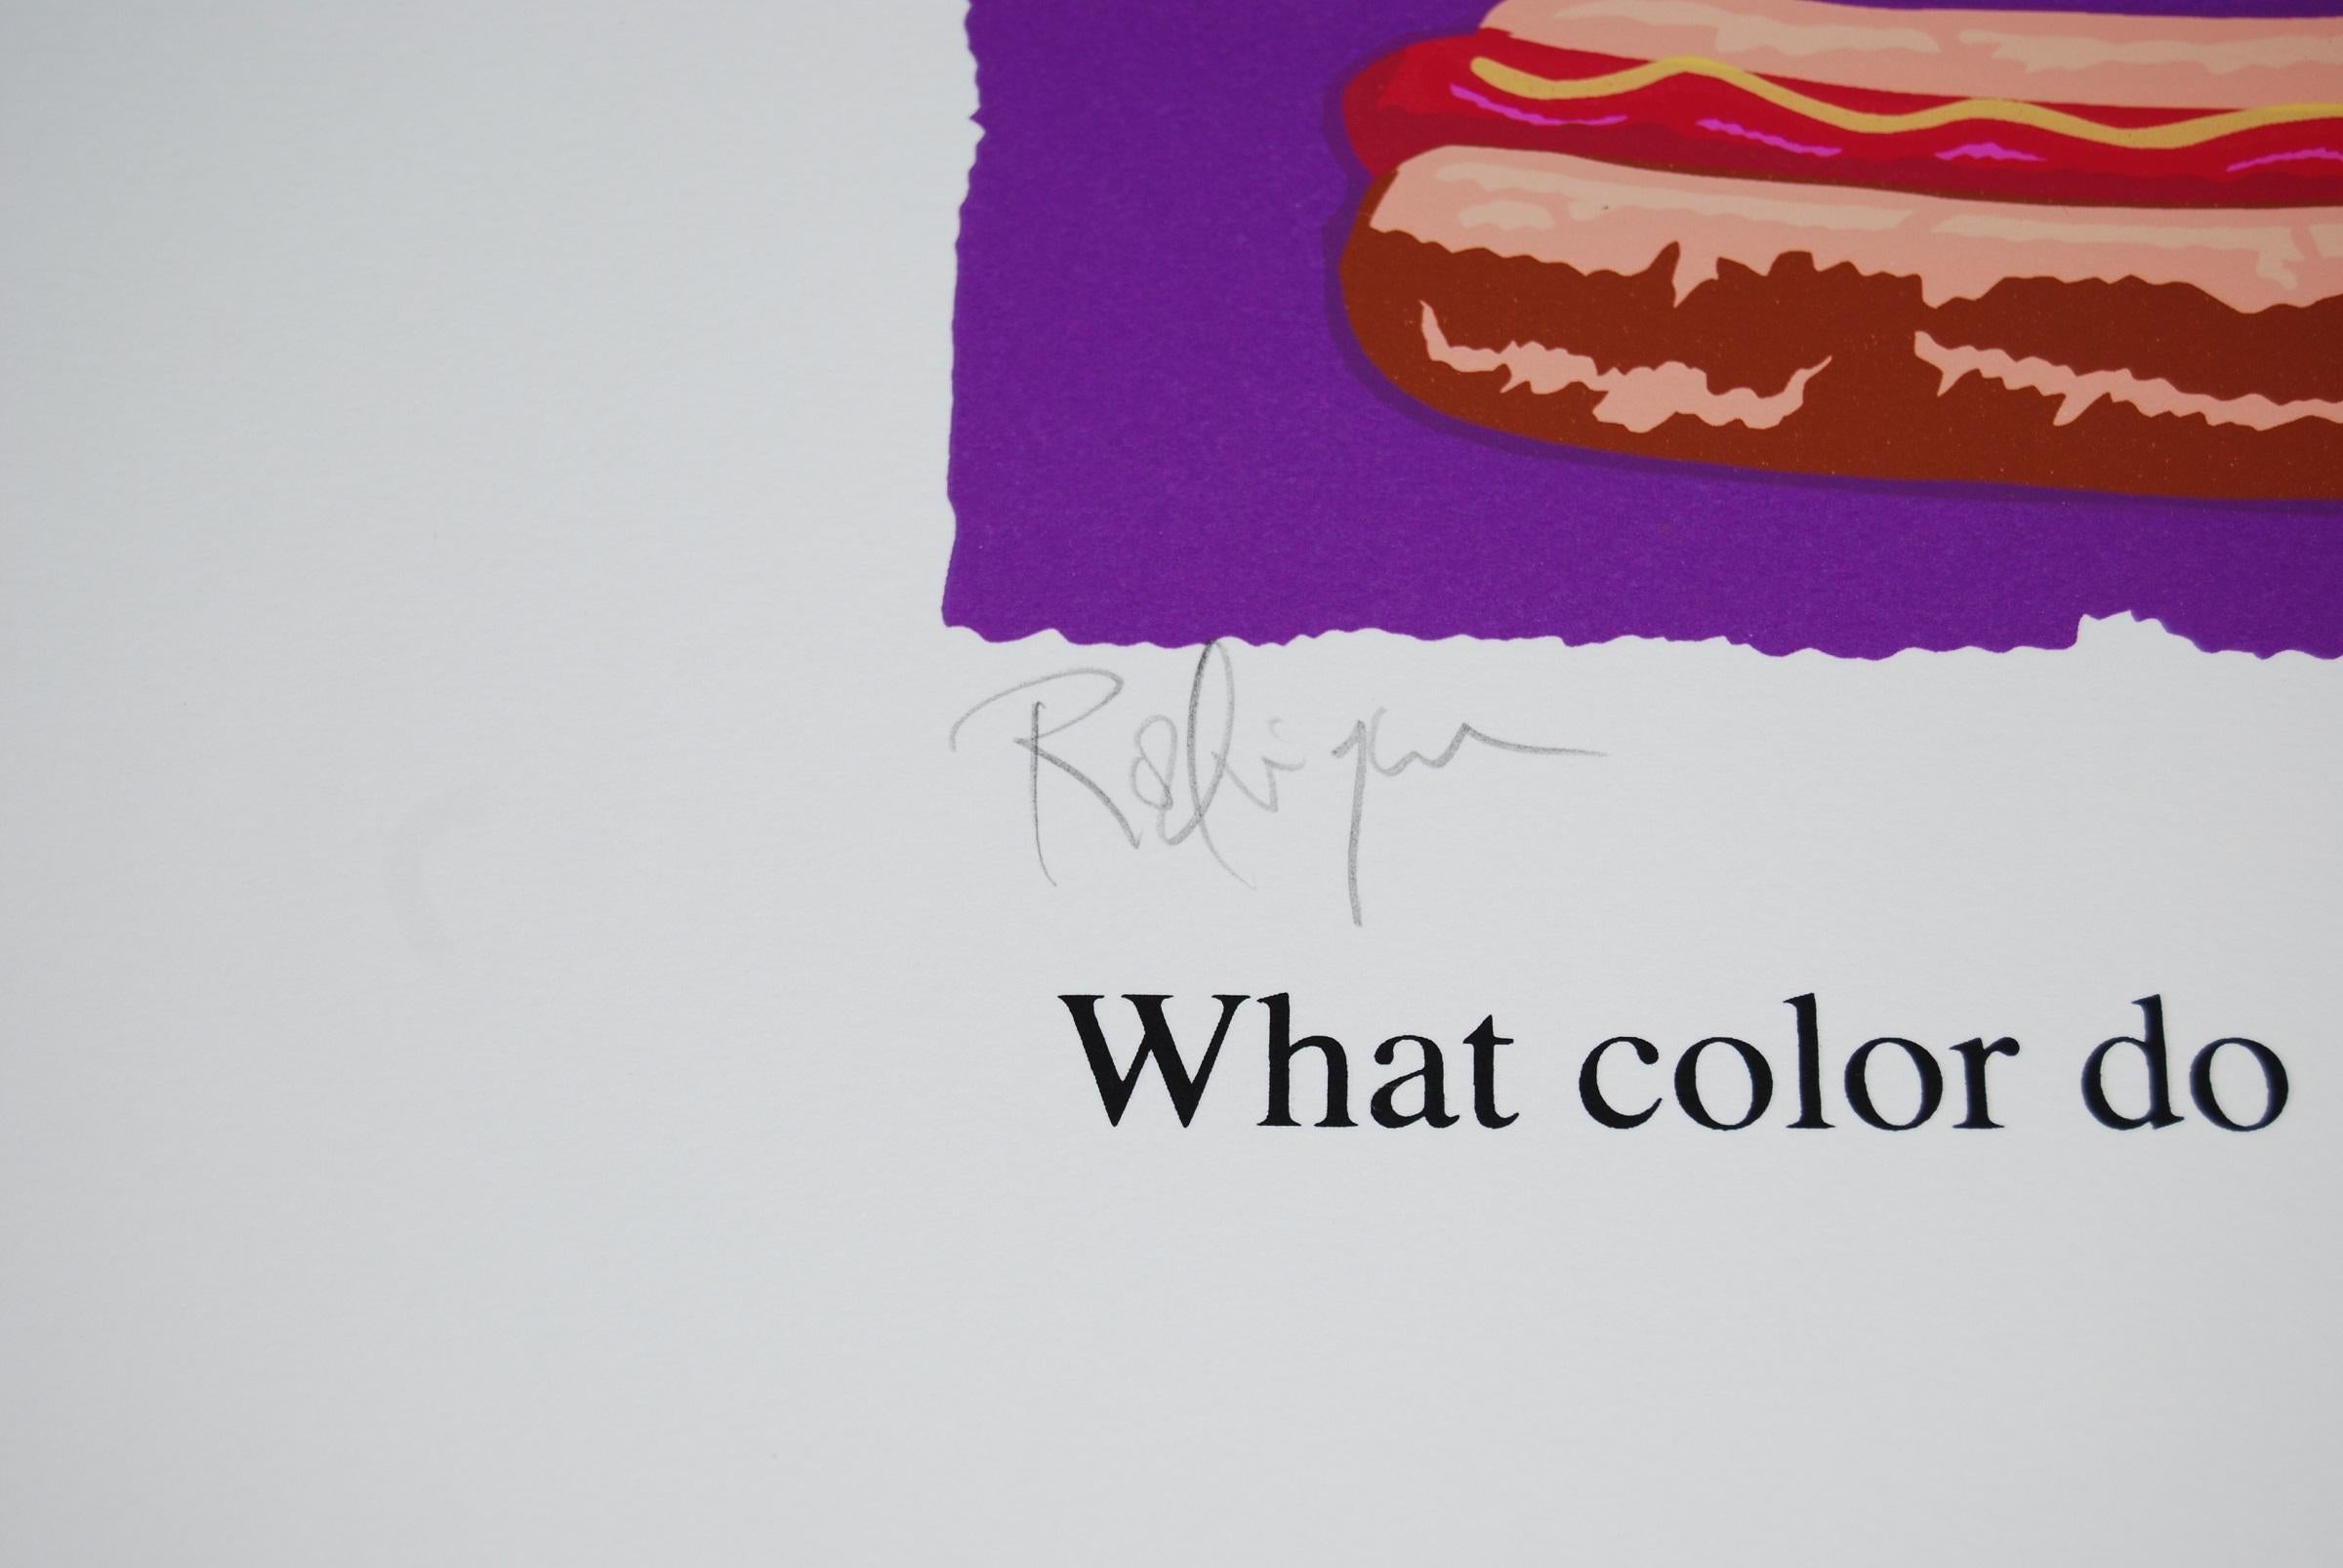 Cette œuvre Blue Dog se compose de 2 cadres ; l'un avec la tête d'un chien bleu avec un fond violet qui se cache au-dessus d'un hot dog fraîchement cuit.  Le deuxième cadre a un chien jaune sur un fond bleu et un cadre décoré peint en violet.  Le